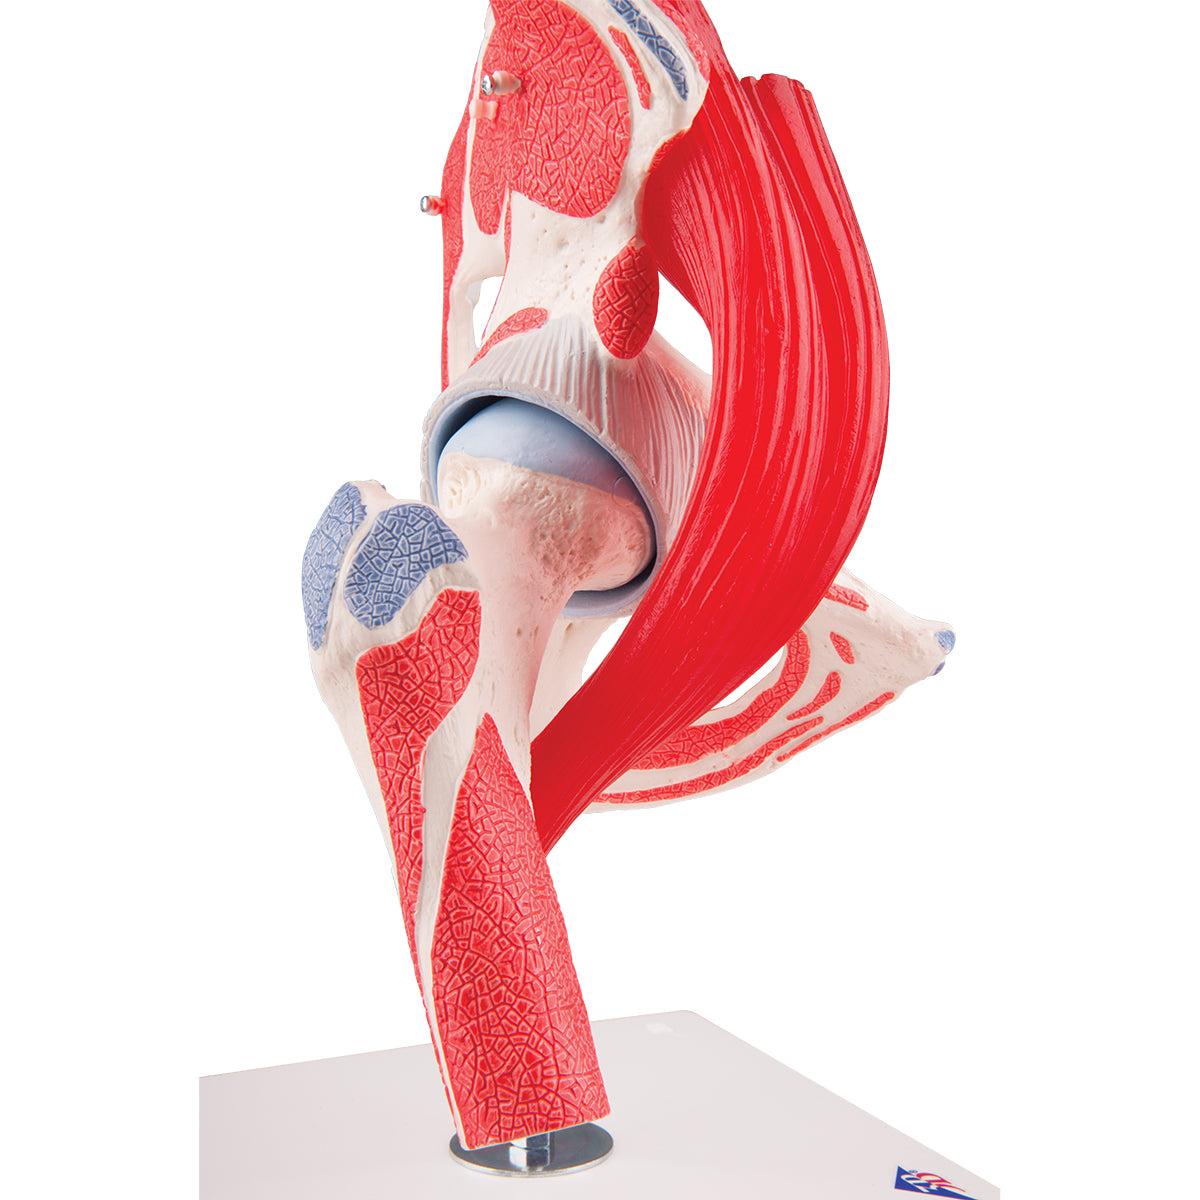 Fleksibel hoftemodel med muskler som kan adskilles i 7 dele